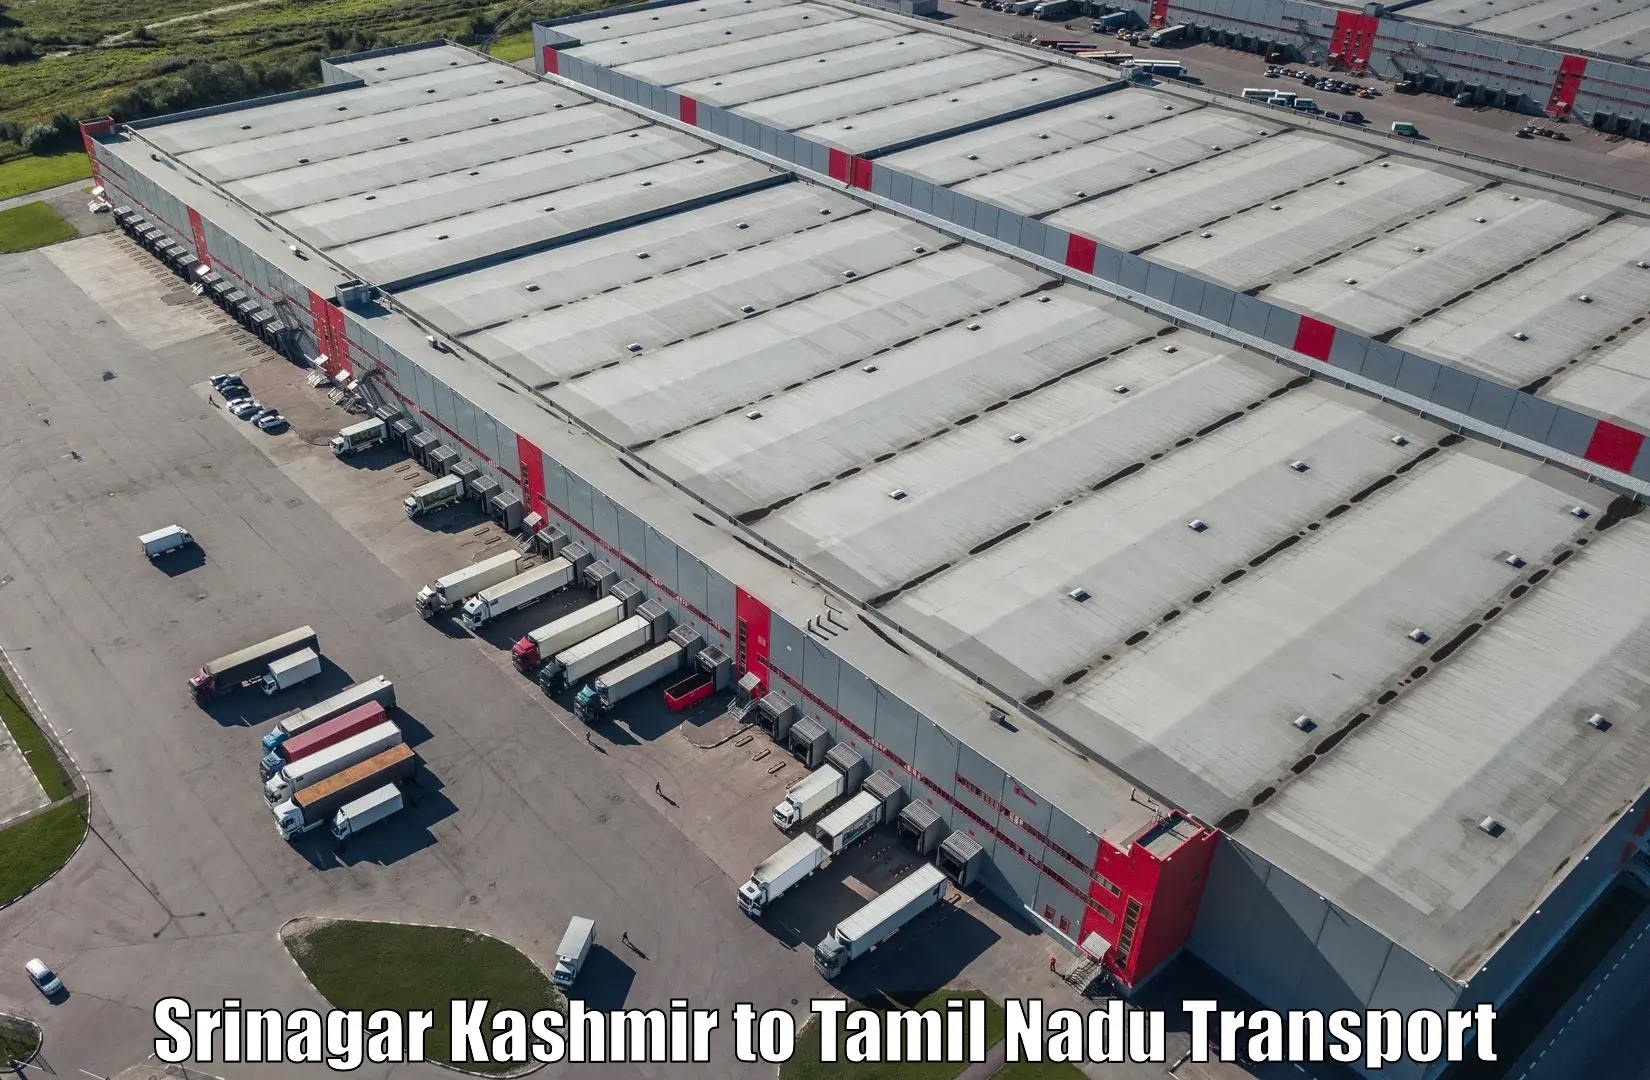 Commercial transport service Srinagar Kashmir to Azhagappapuram